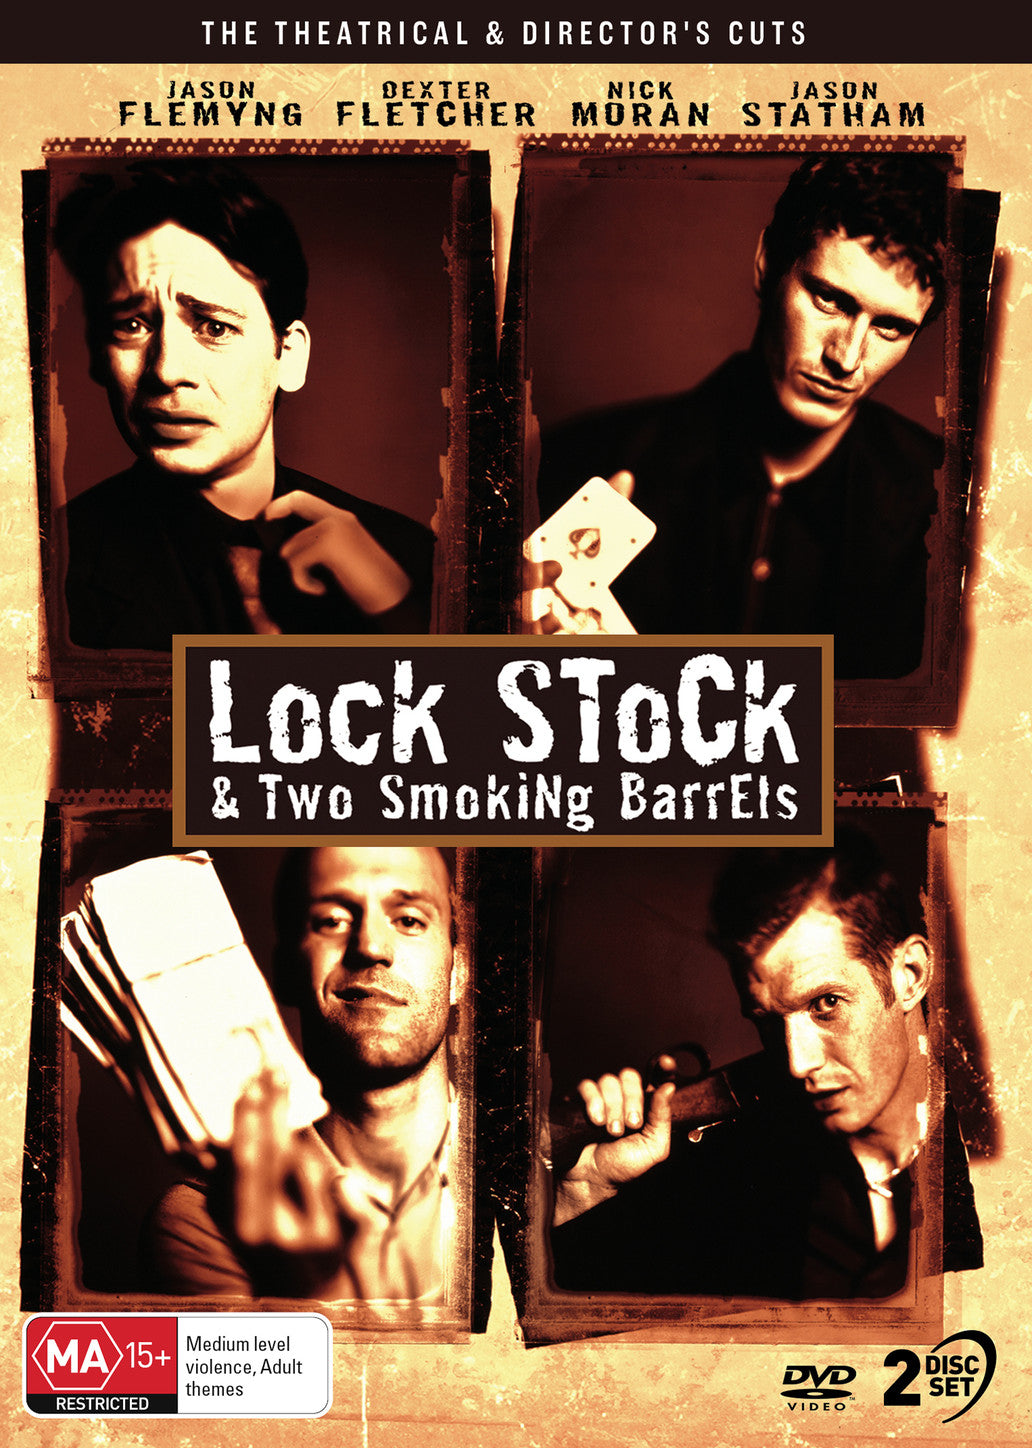 LOCK, STOCK & TWO SMOKING BARRELS